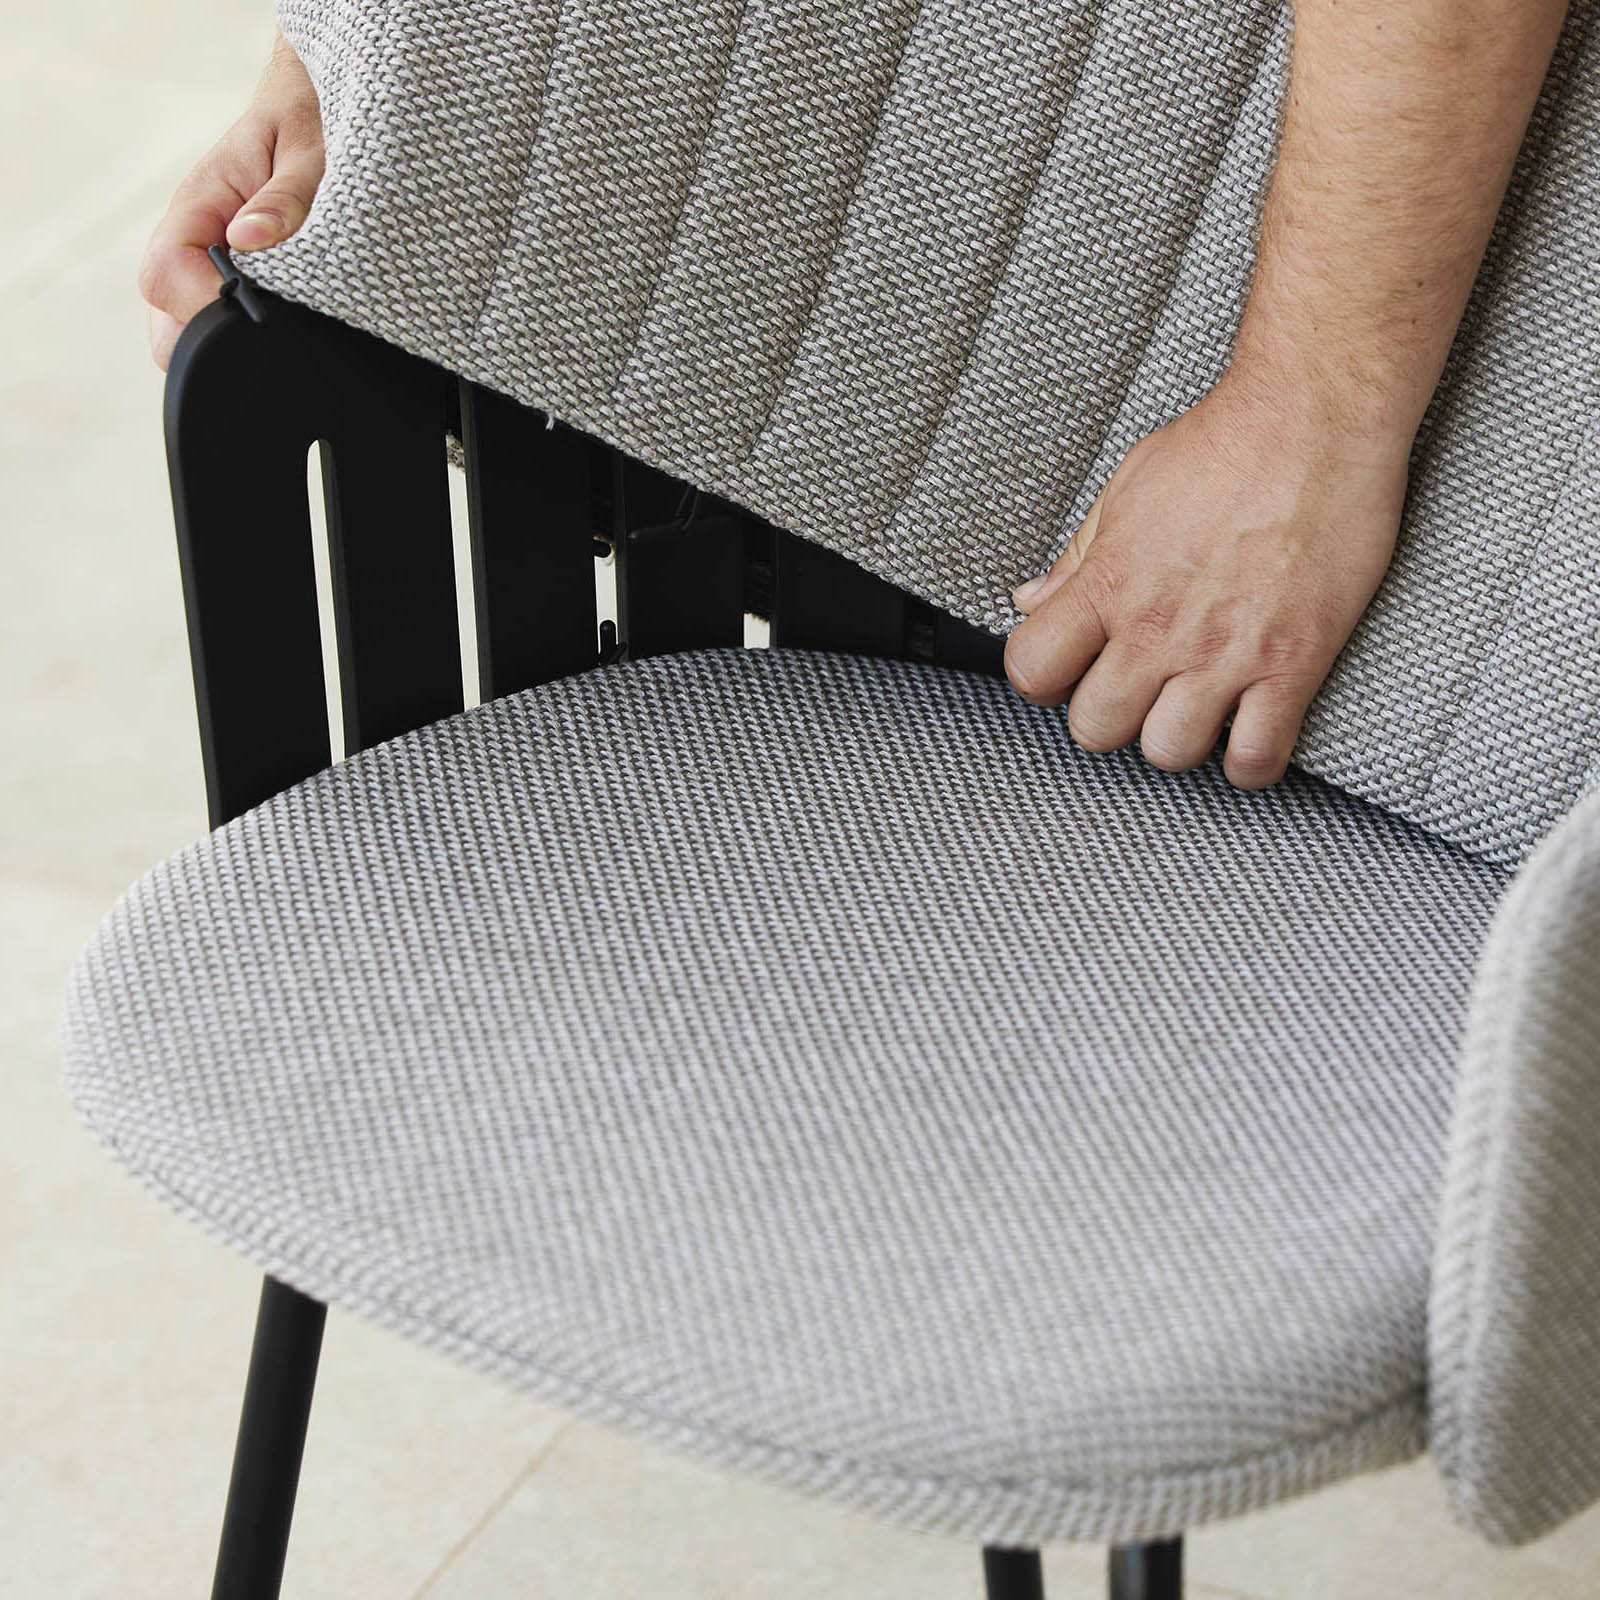 Choice chair seat cushion für den Außenbereich aus Cane-line Free in Sand